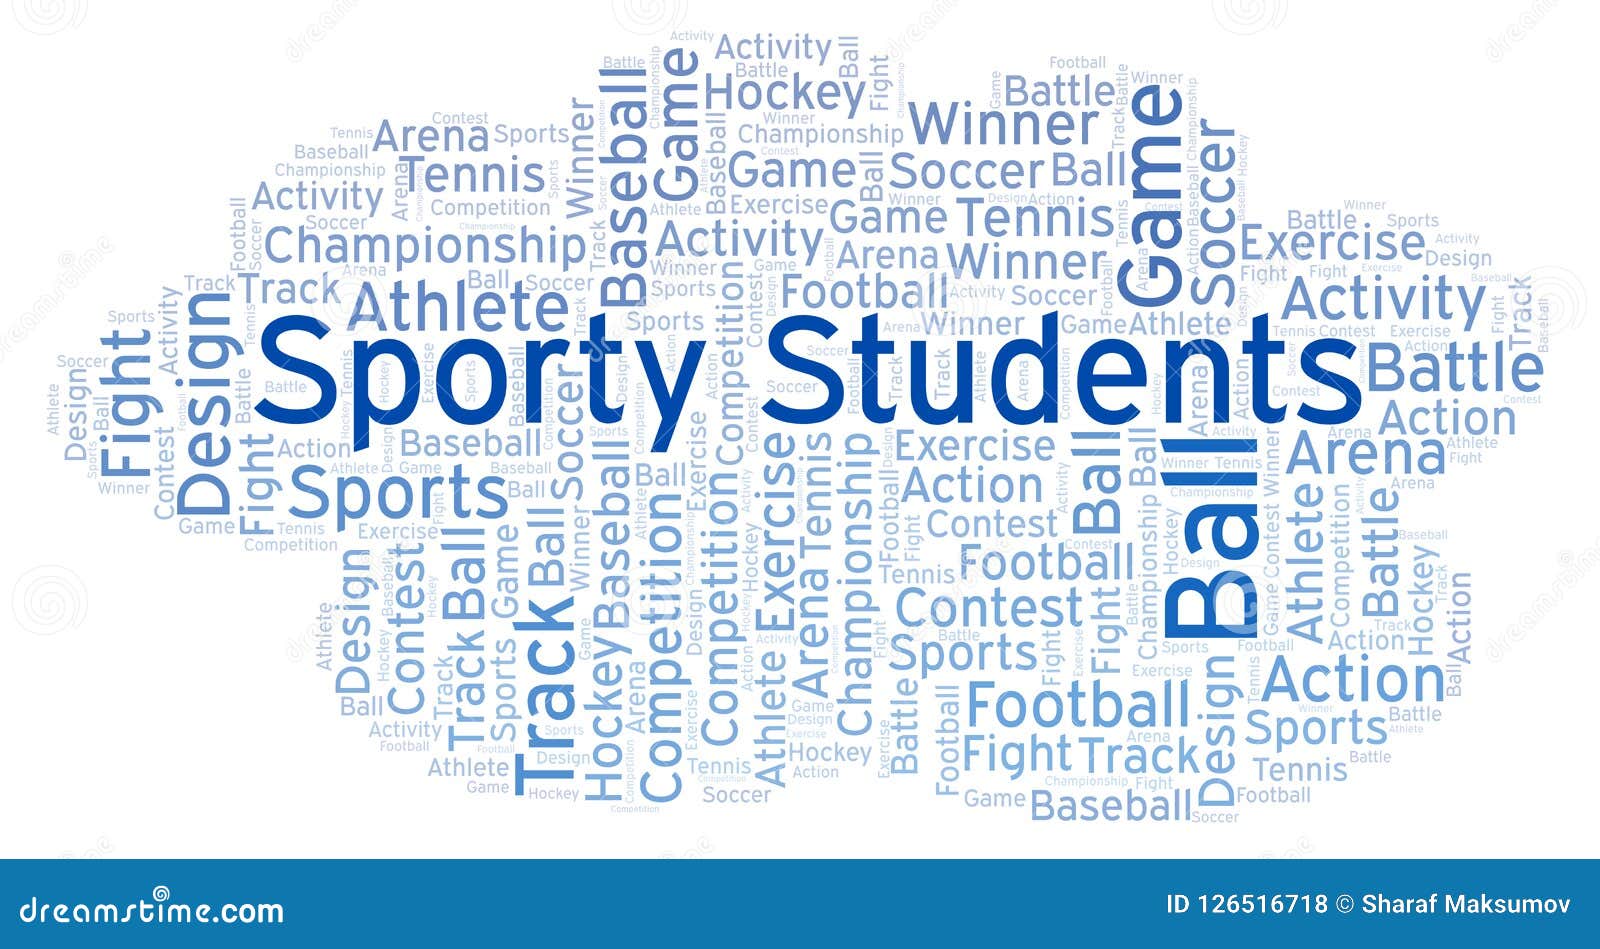 Найти слово студент. Облако слов спорт.